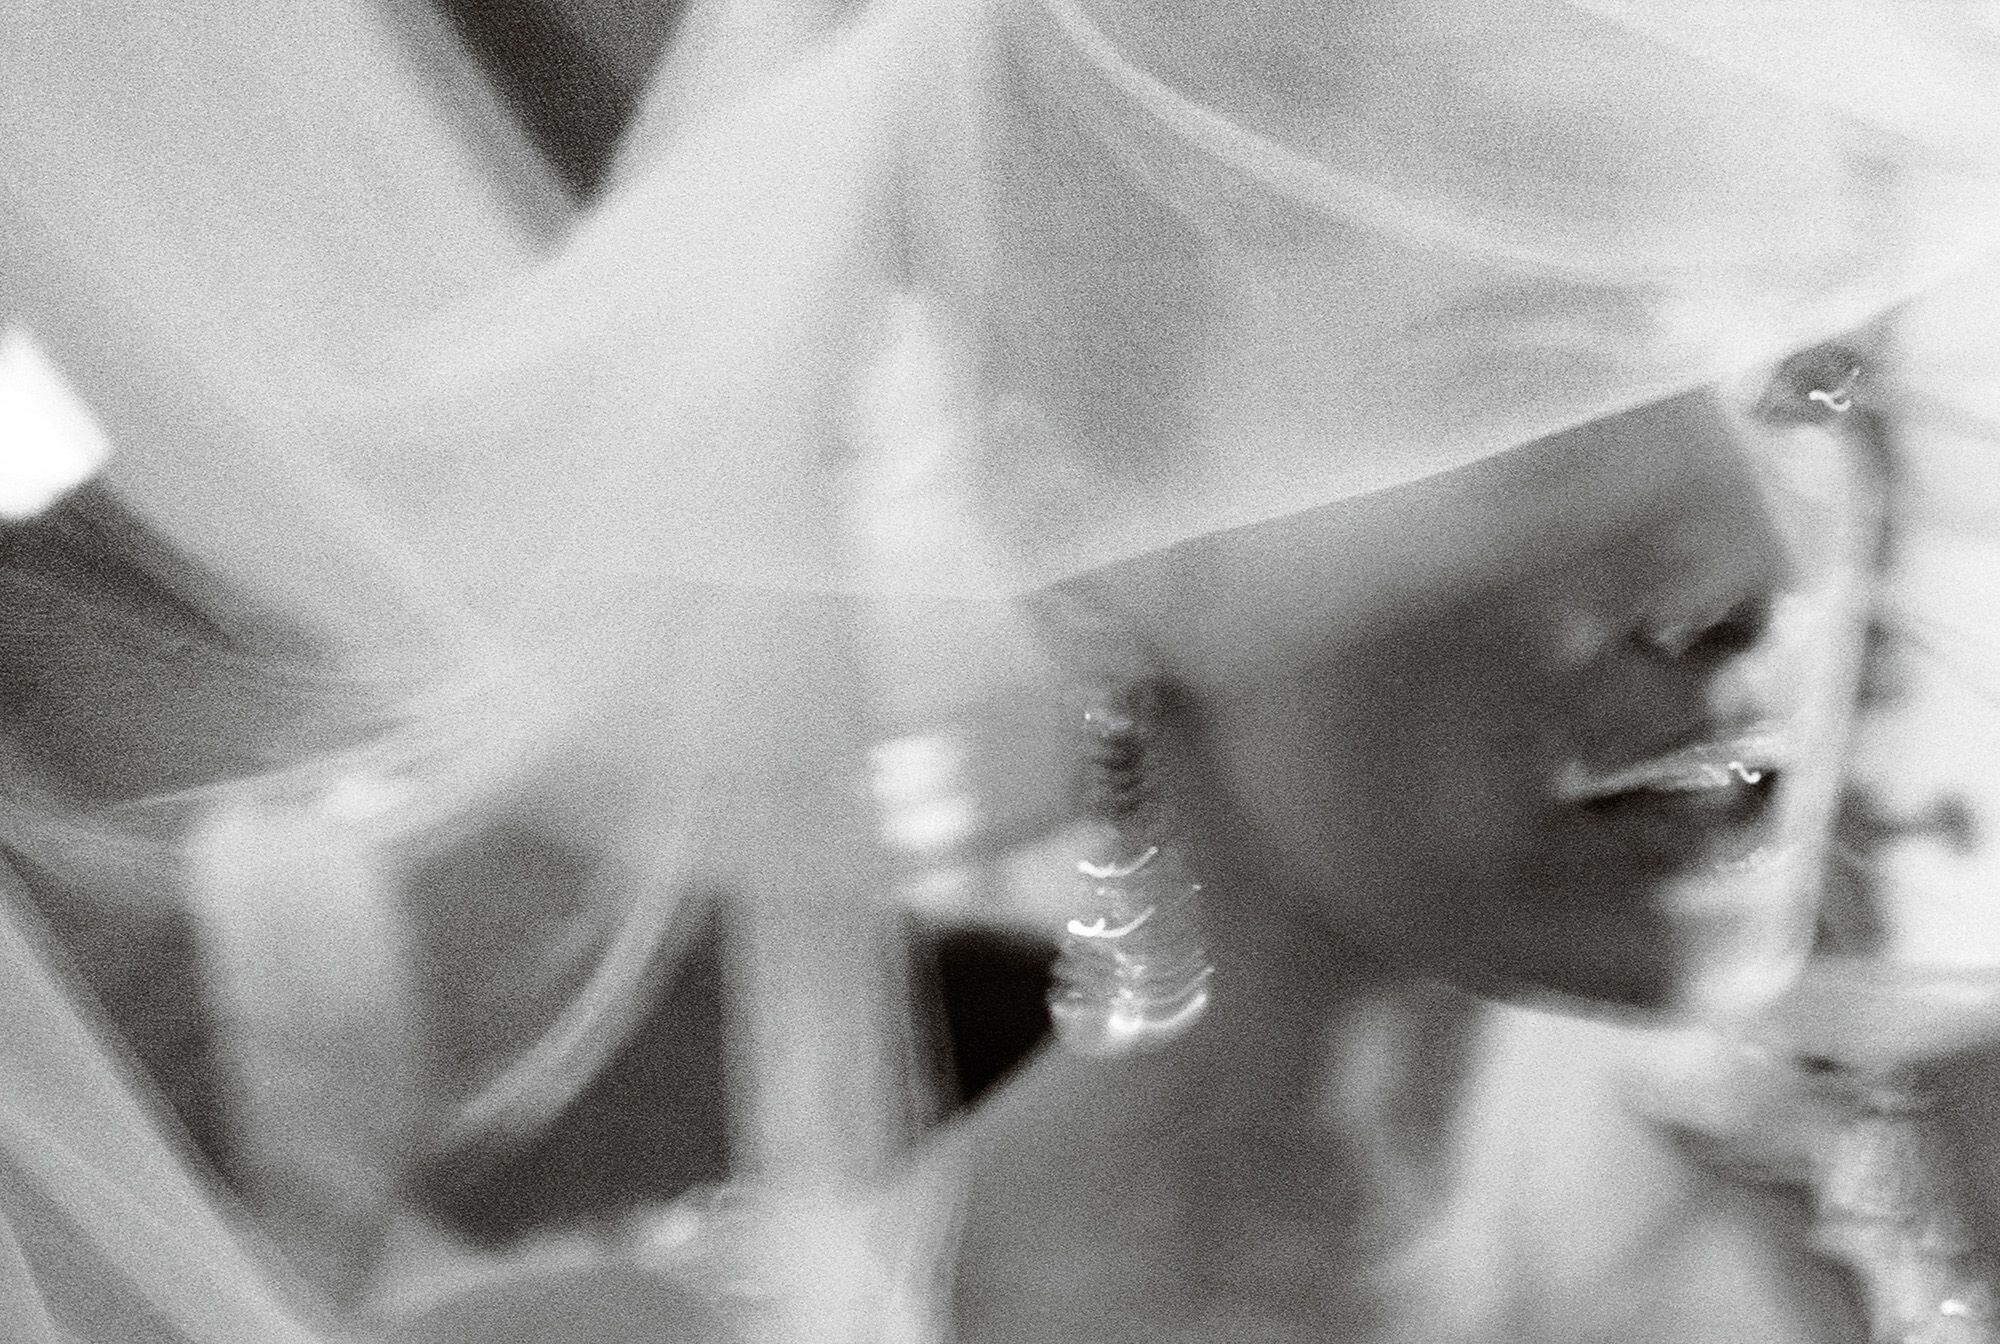 La actriz Salma Hayek, retratada por Mario Testino el día de su boda con el magnate francés François-Henri Pinault. La ceremonia se ofició en la ópera La Fenice, en Venecia, en abril de 2009. La imagen forma parte de 'I Love You', el nuevo libro de Testino publicado por Taschen.